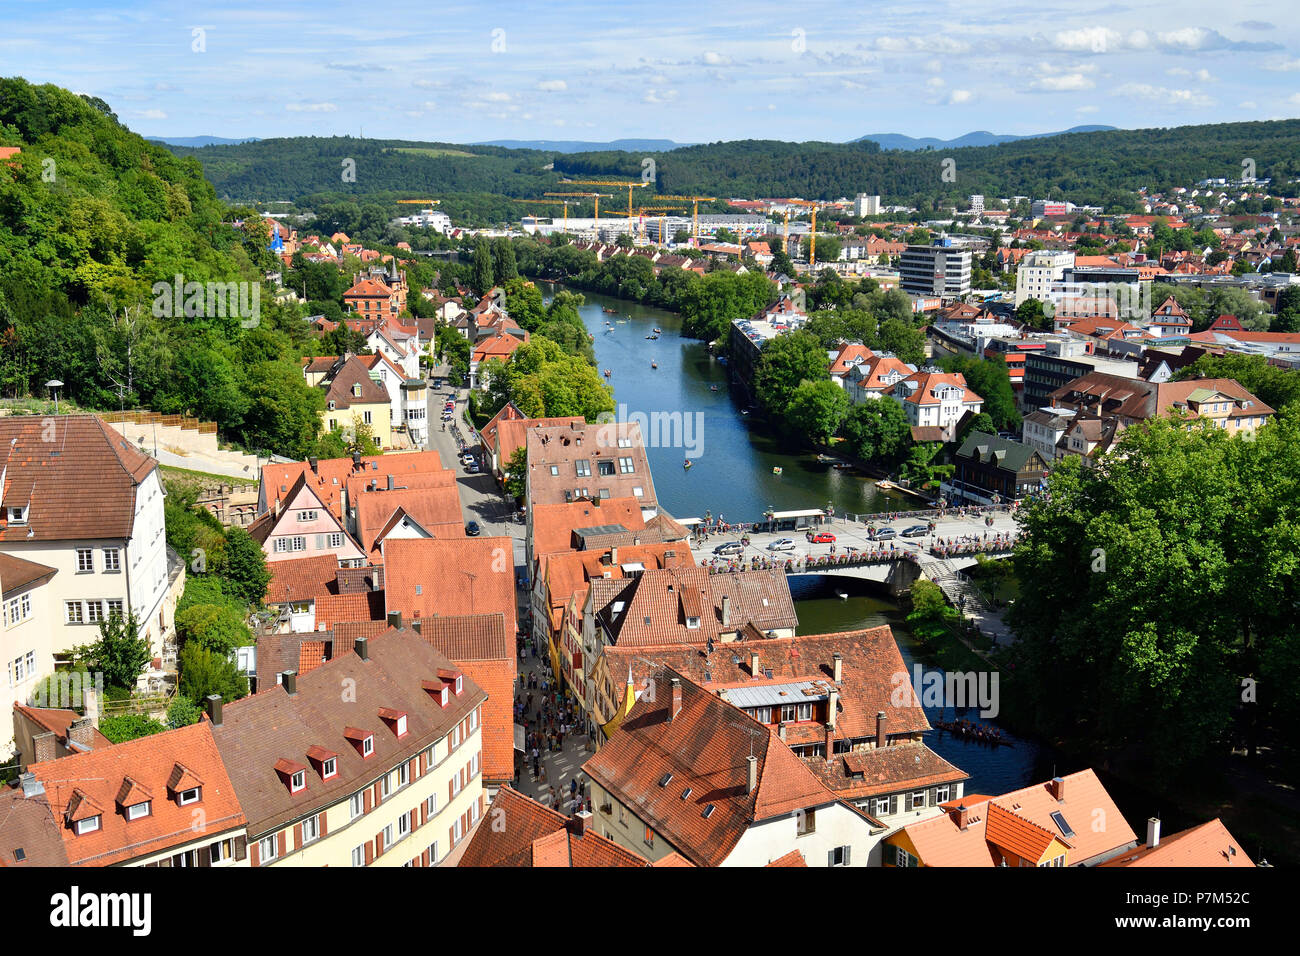 Germany, Baden-Wurttemberg, Neckartal (Neckar valley), Tübingen, Neckar front Stock Photo